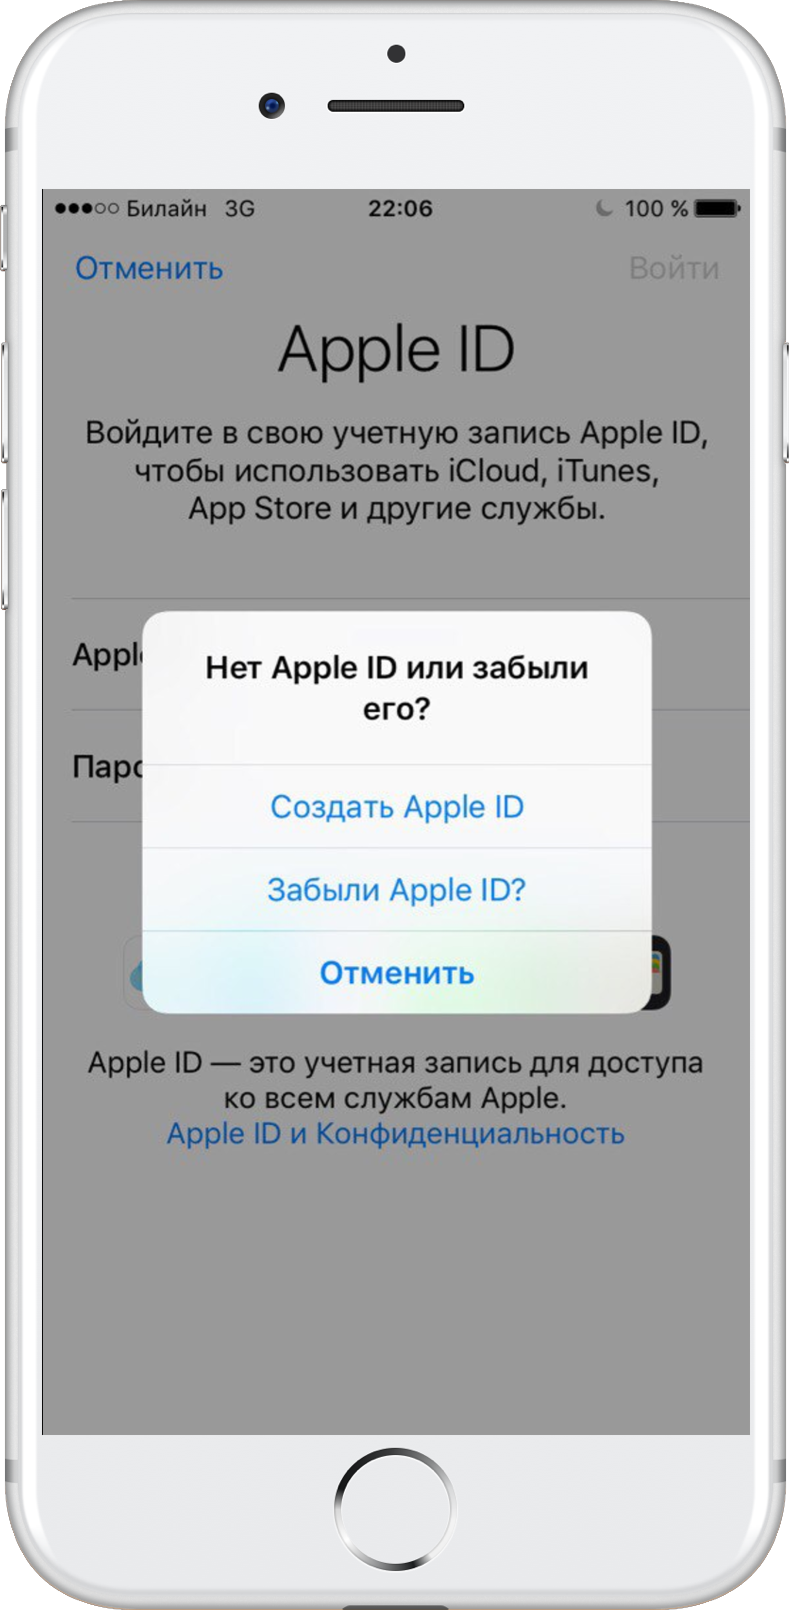 Как создать apple id без кредитной карты - полное руководство